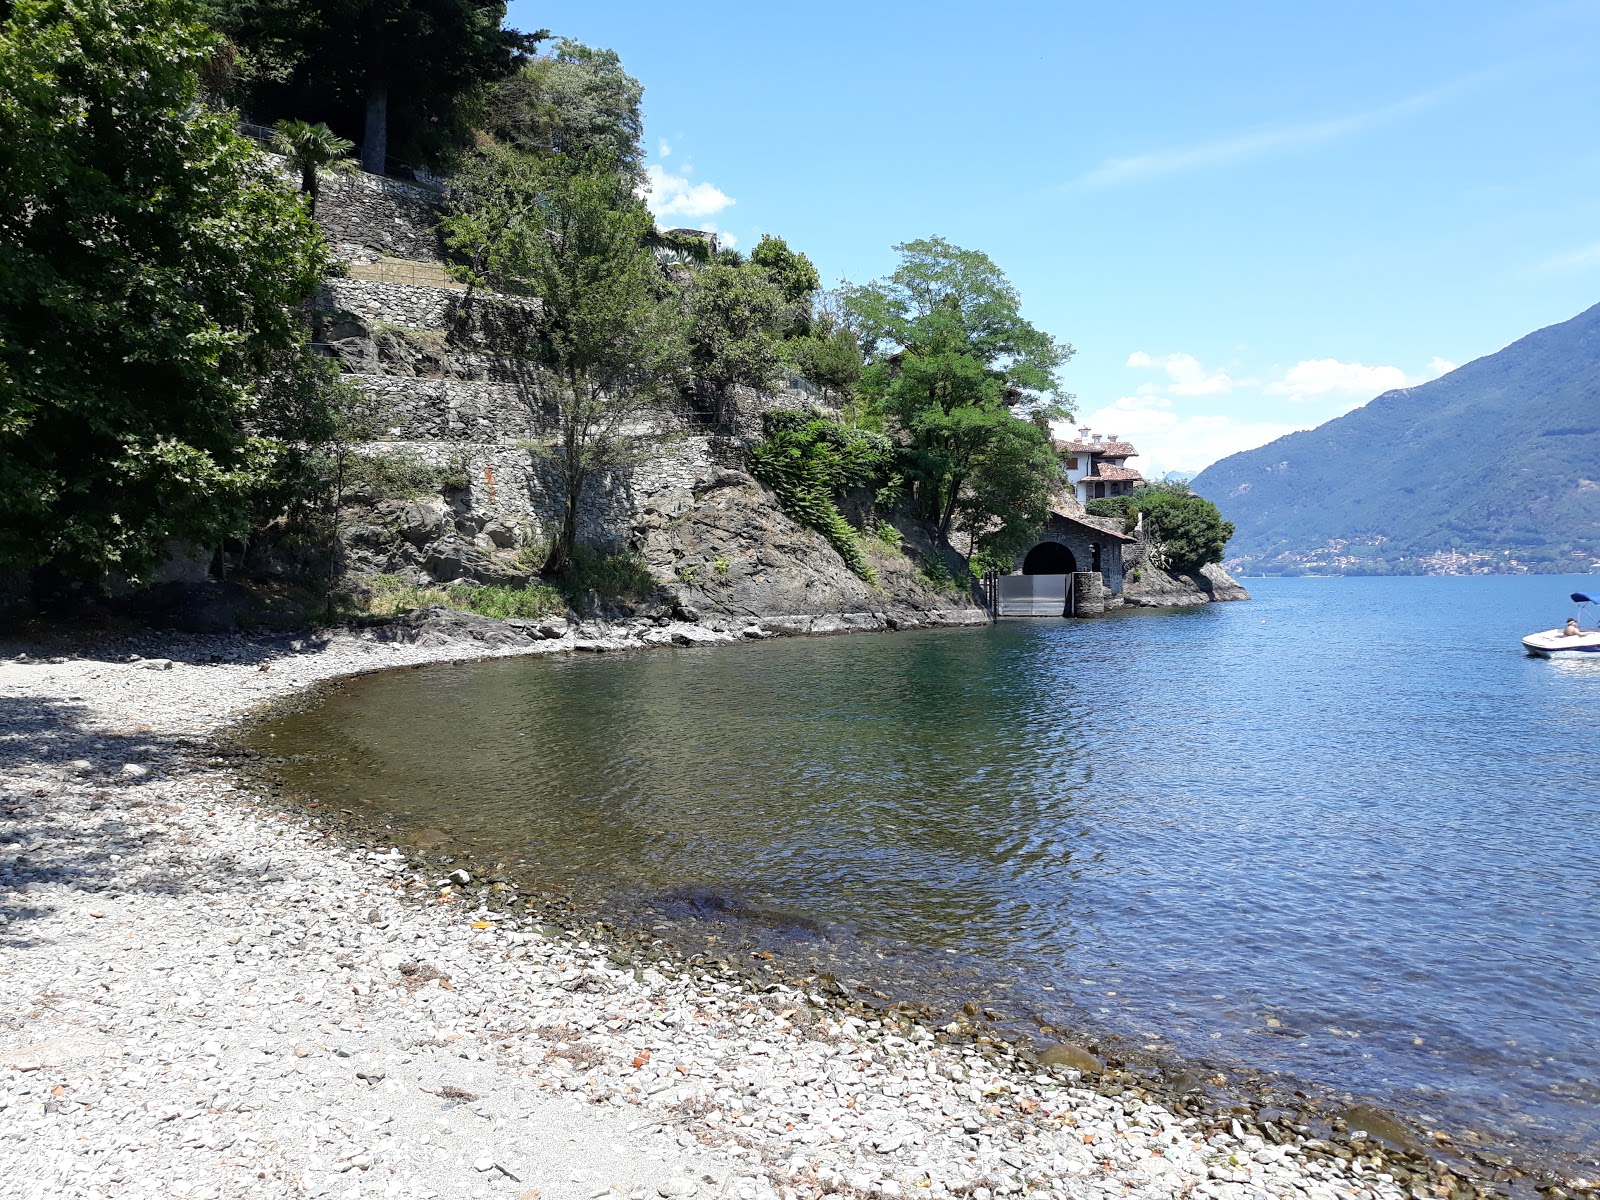 Photo of Spiaggia Santa Maria Rezzonico with gray pebble surface